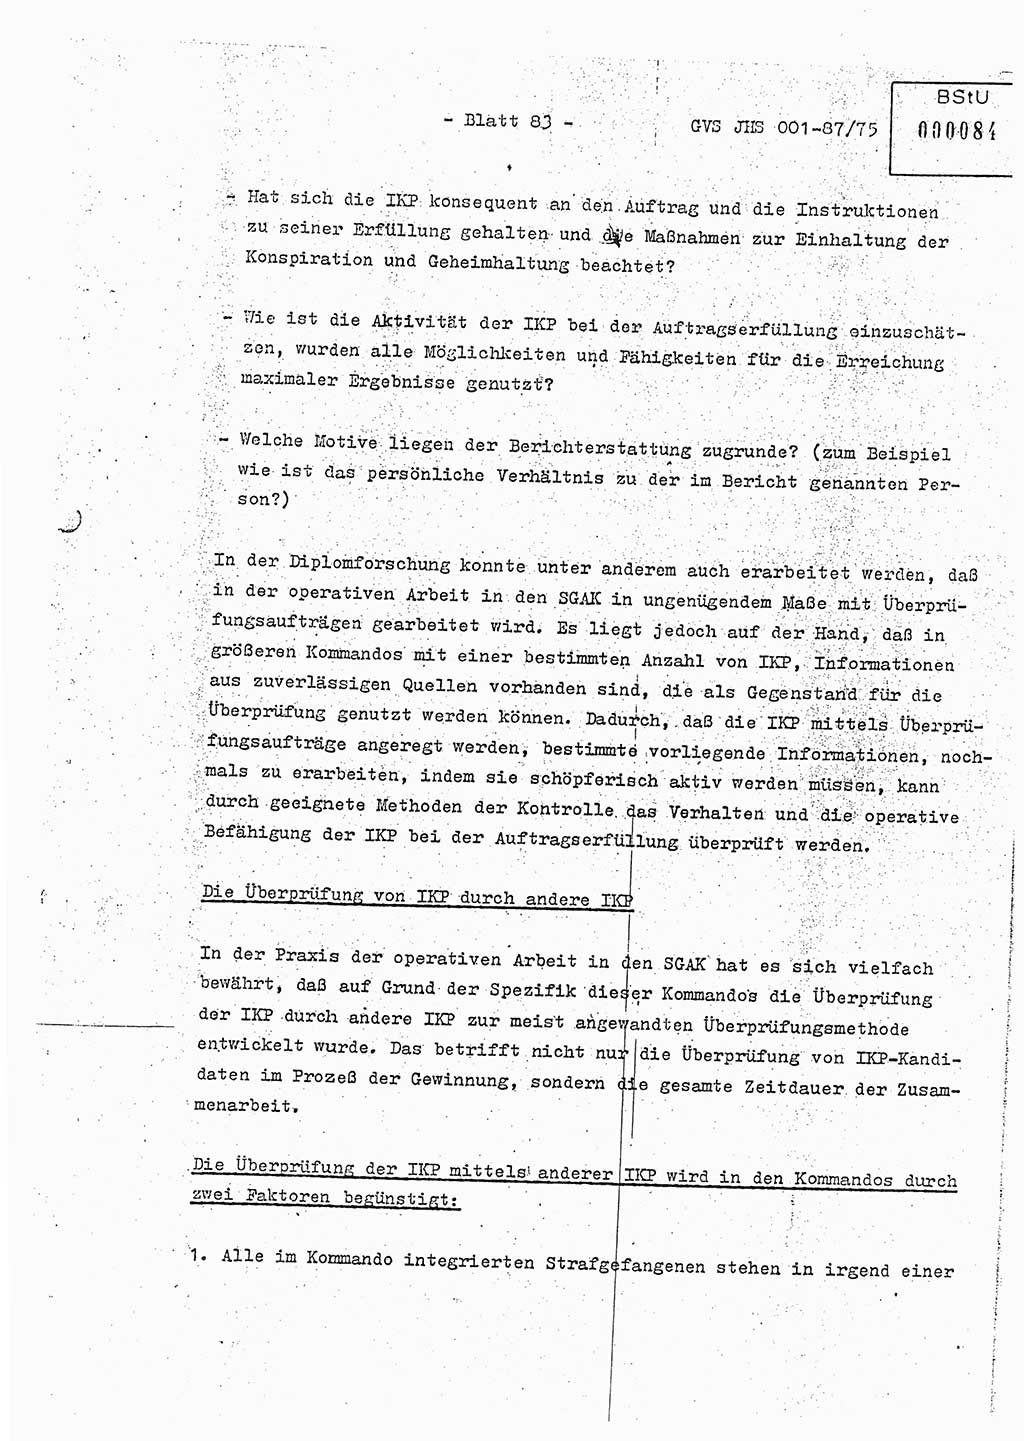 Diplomarbeit Hauptmann Volkmar Heinz (Abt. ⅩⅣ), Oberleutnant Lothar Rüdiger (BV Lpz. Abt. Ⅺ), Ministerium für Staatssicherheit (MfS) [Deutsche Demokratische Republik (DDR)], Juristische Hochschule (JHS), Geheime Verschlußsache (GVS) o001-87/75, Potsdam 1975, Seite 83 (Dipl.-Arb. MfS DDR JHS GVS o001-87/75 1975, S. 83)